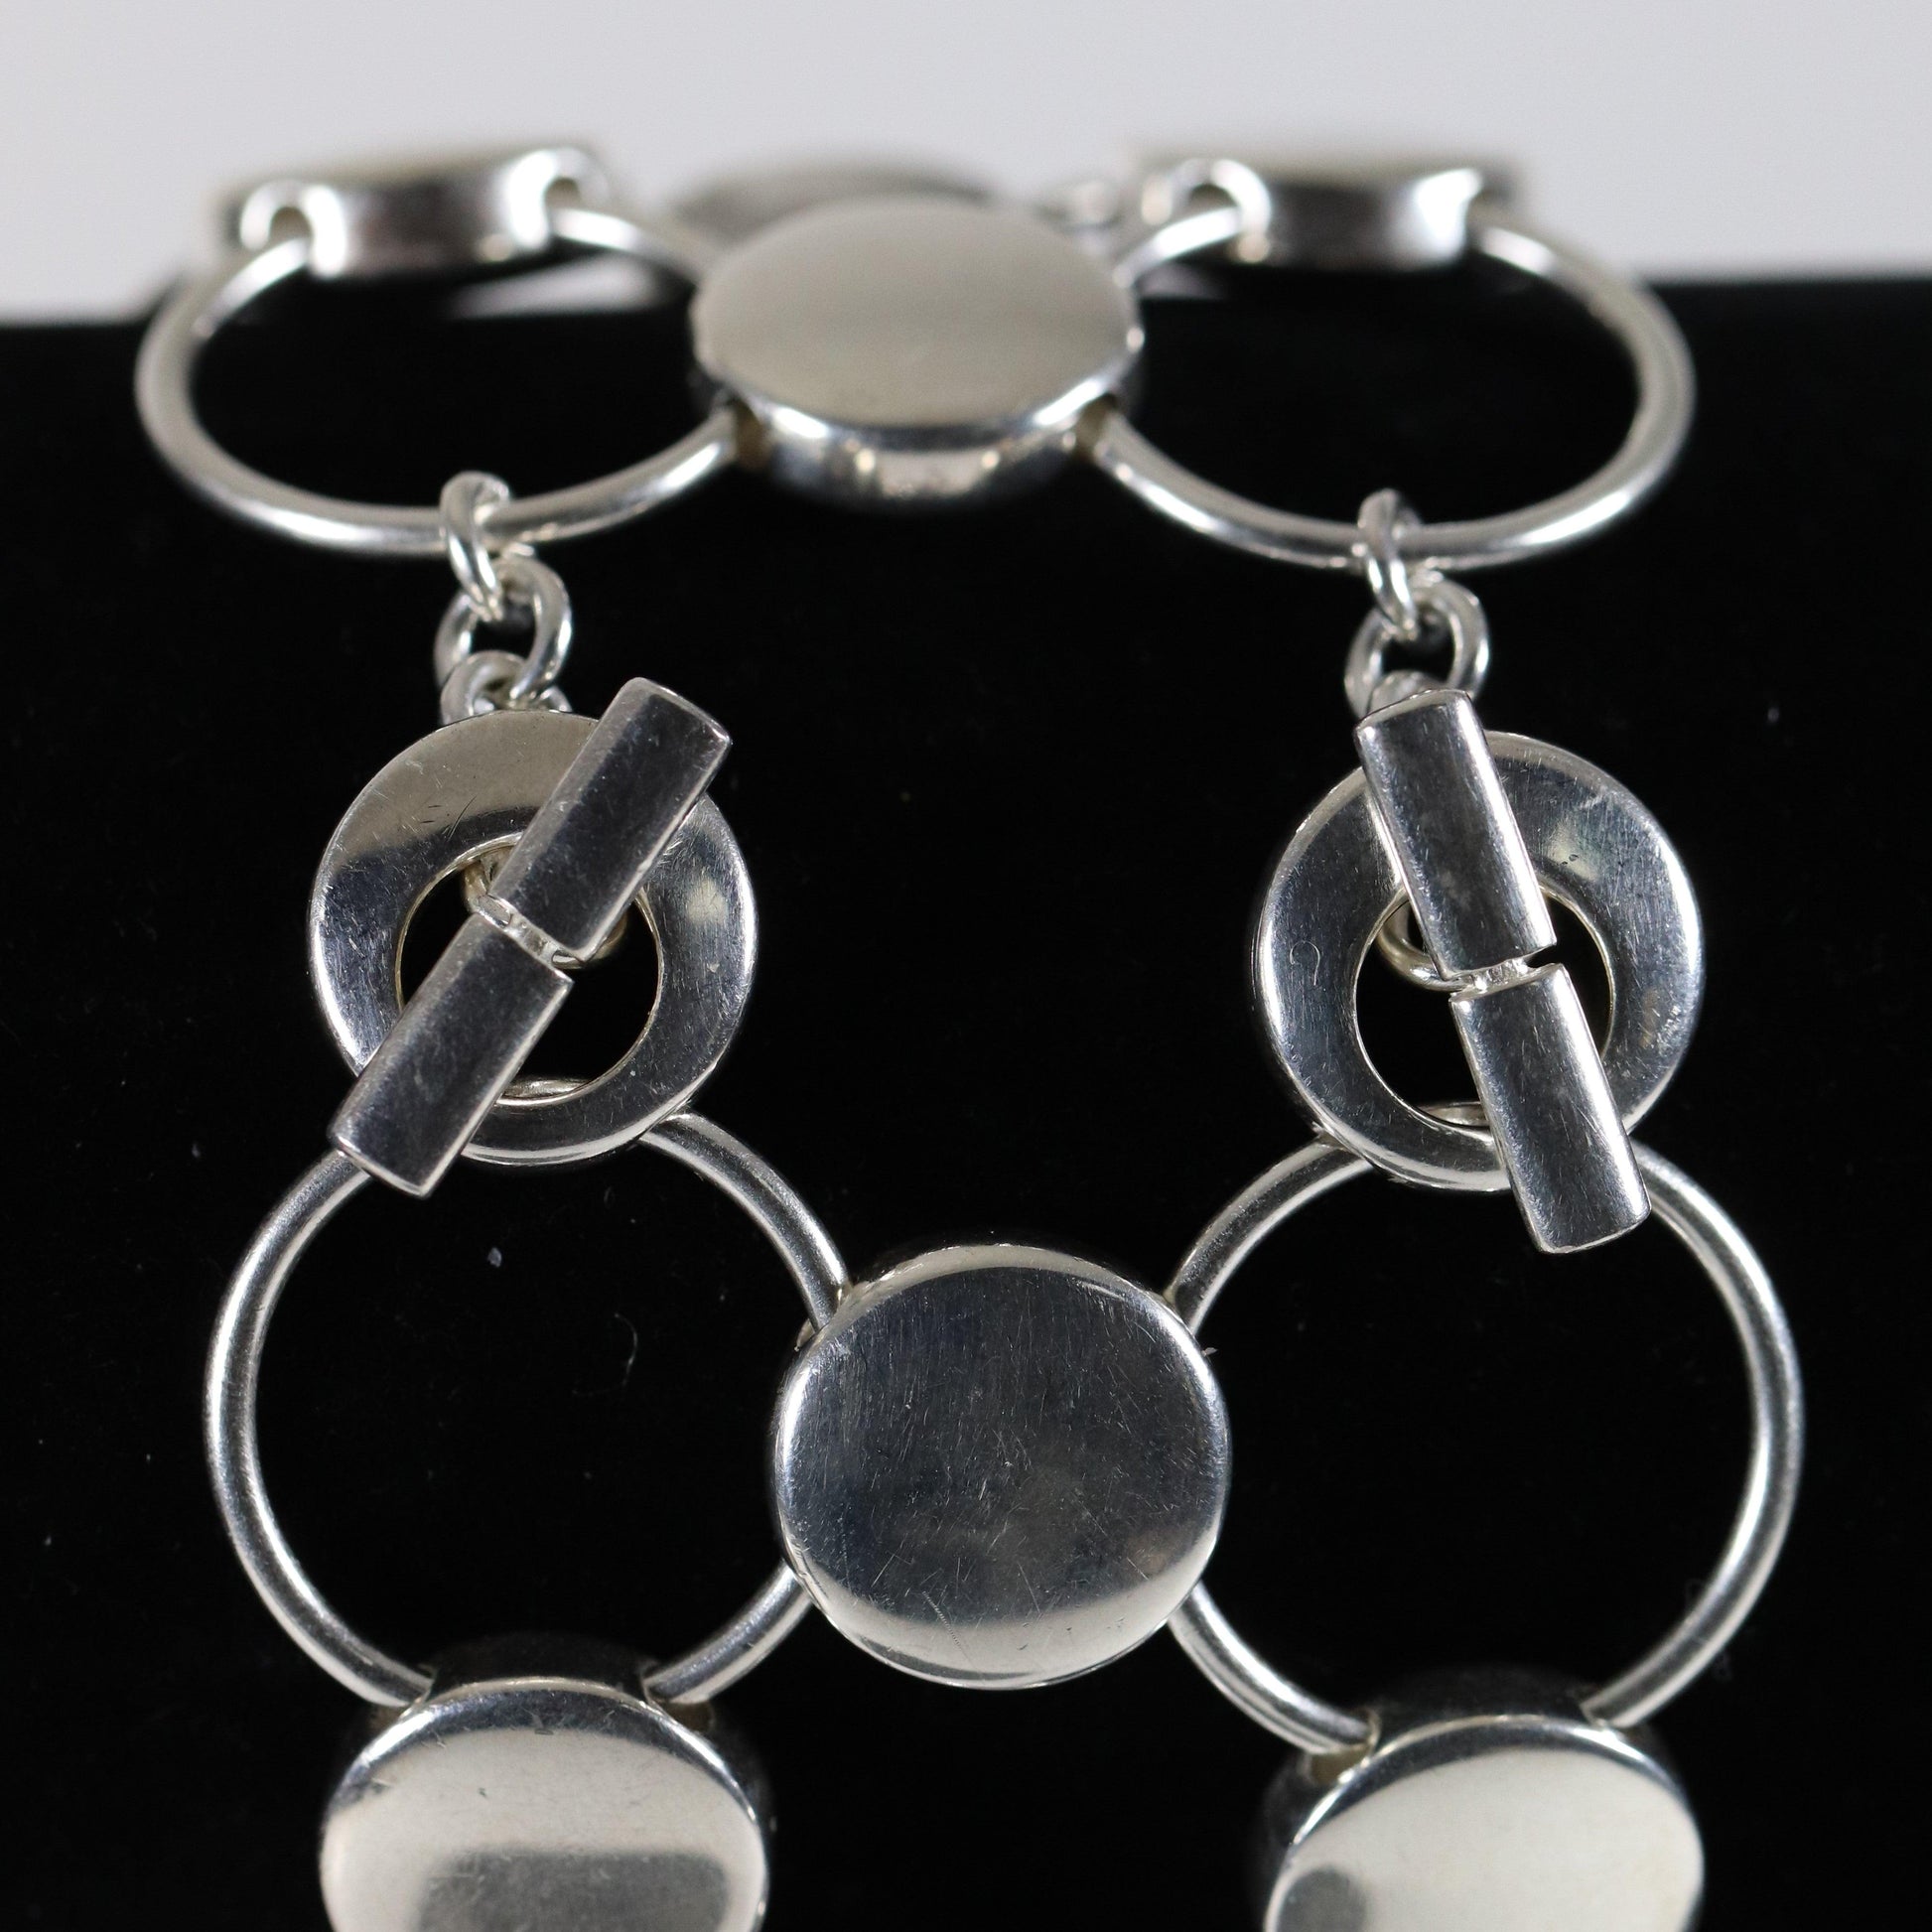 Vintage Georg Jensen Jewelry | Regitze Overgaard Avant Garde Circle Bracelet 464 - Carmel Fine Silver Jewelry